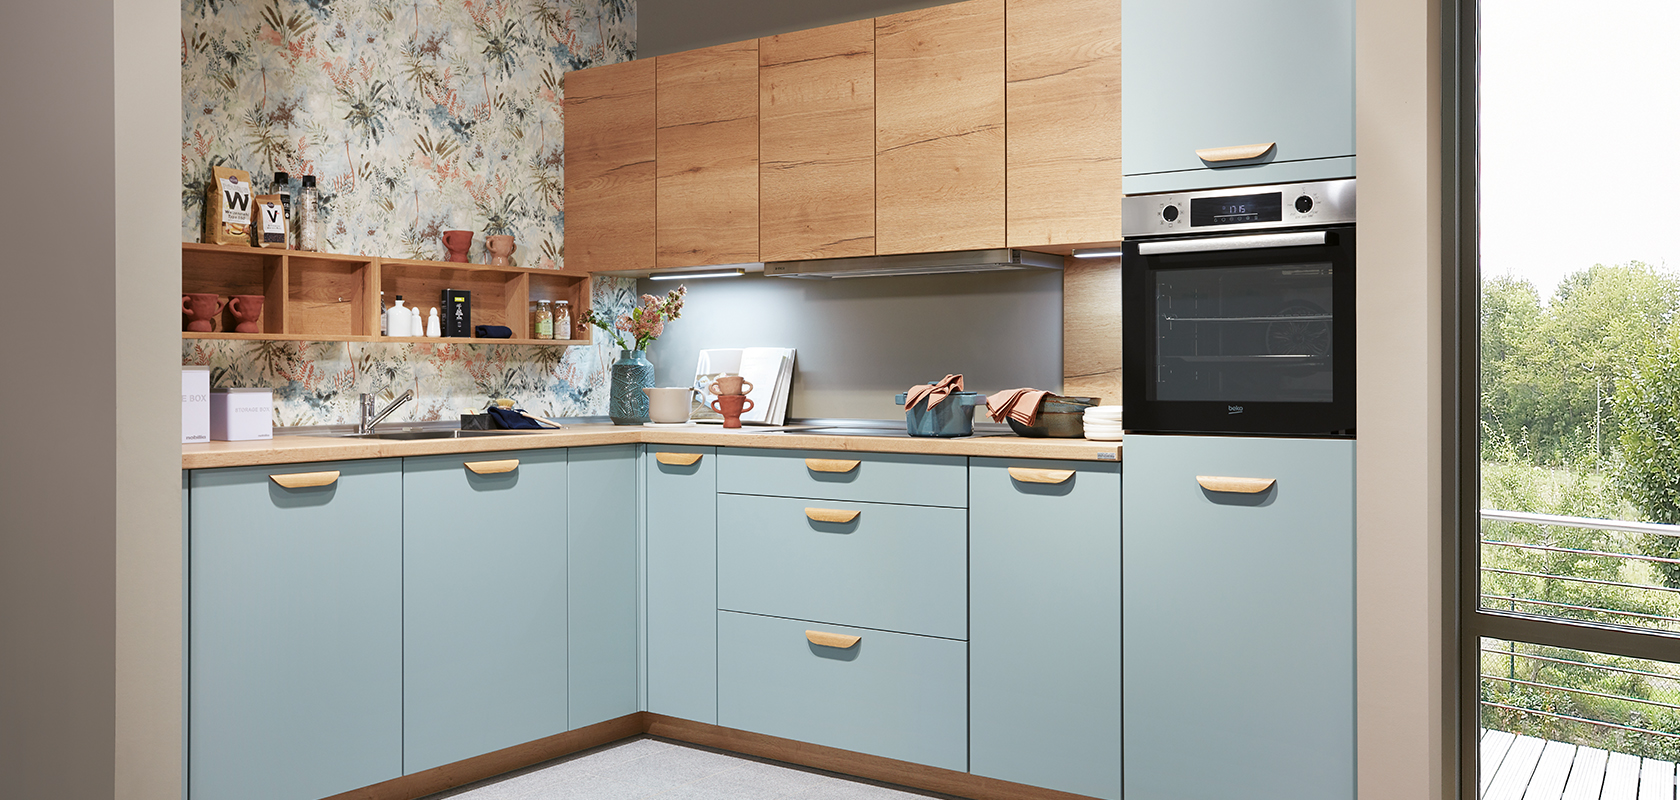 Moderne Kücheninnenräume mit blauen Schränken, Holzarbeitsplatten und Edelstahlgeräten, akzentuiert mit Blumenmuster-Tapete und natürlichem Licht von einem Fenster.